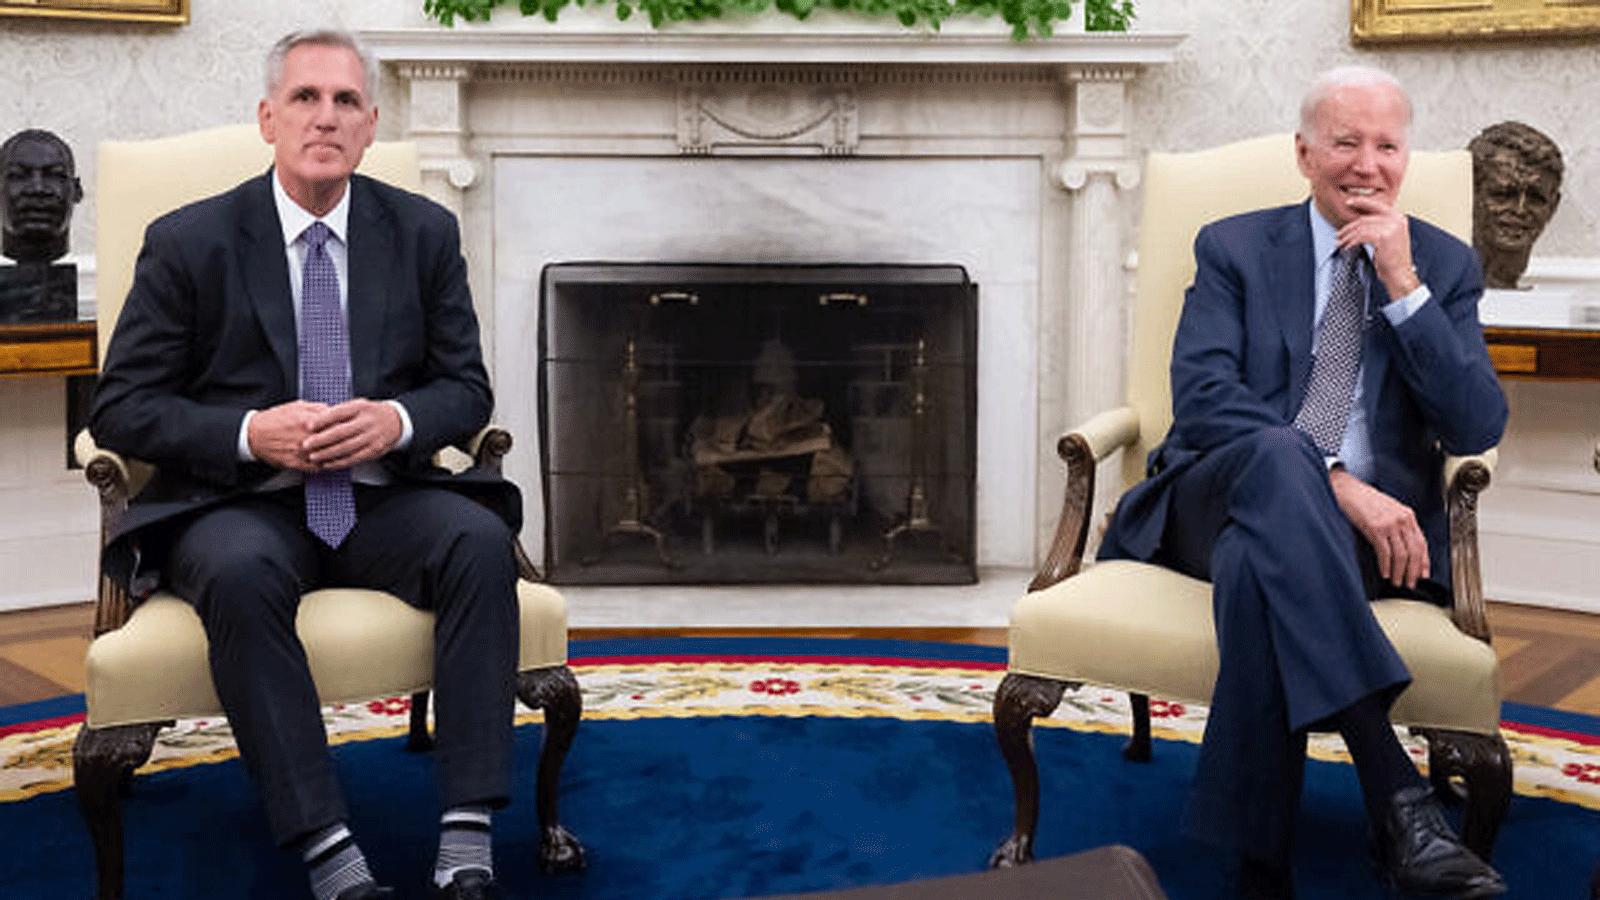 الرئيس الأميركي جو بايدن يلتقي برئيس مجلس النواب الأميركي كيفن مكارثي (يسار) بشأن سقف الديون، في المكتب البيضاوي للبيت الأبيض في واشنطن العاصمة، في 22 مايو\ايار 2023